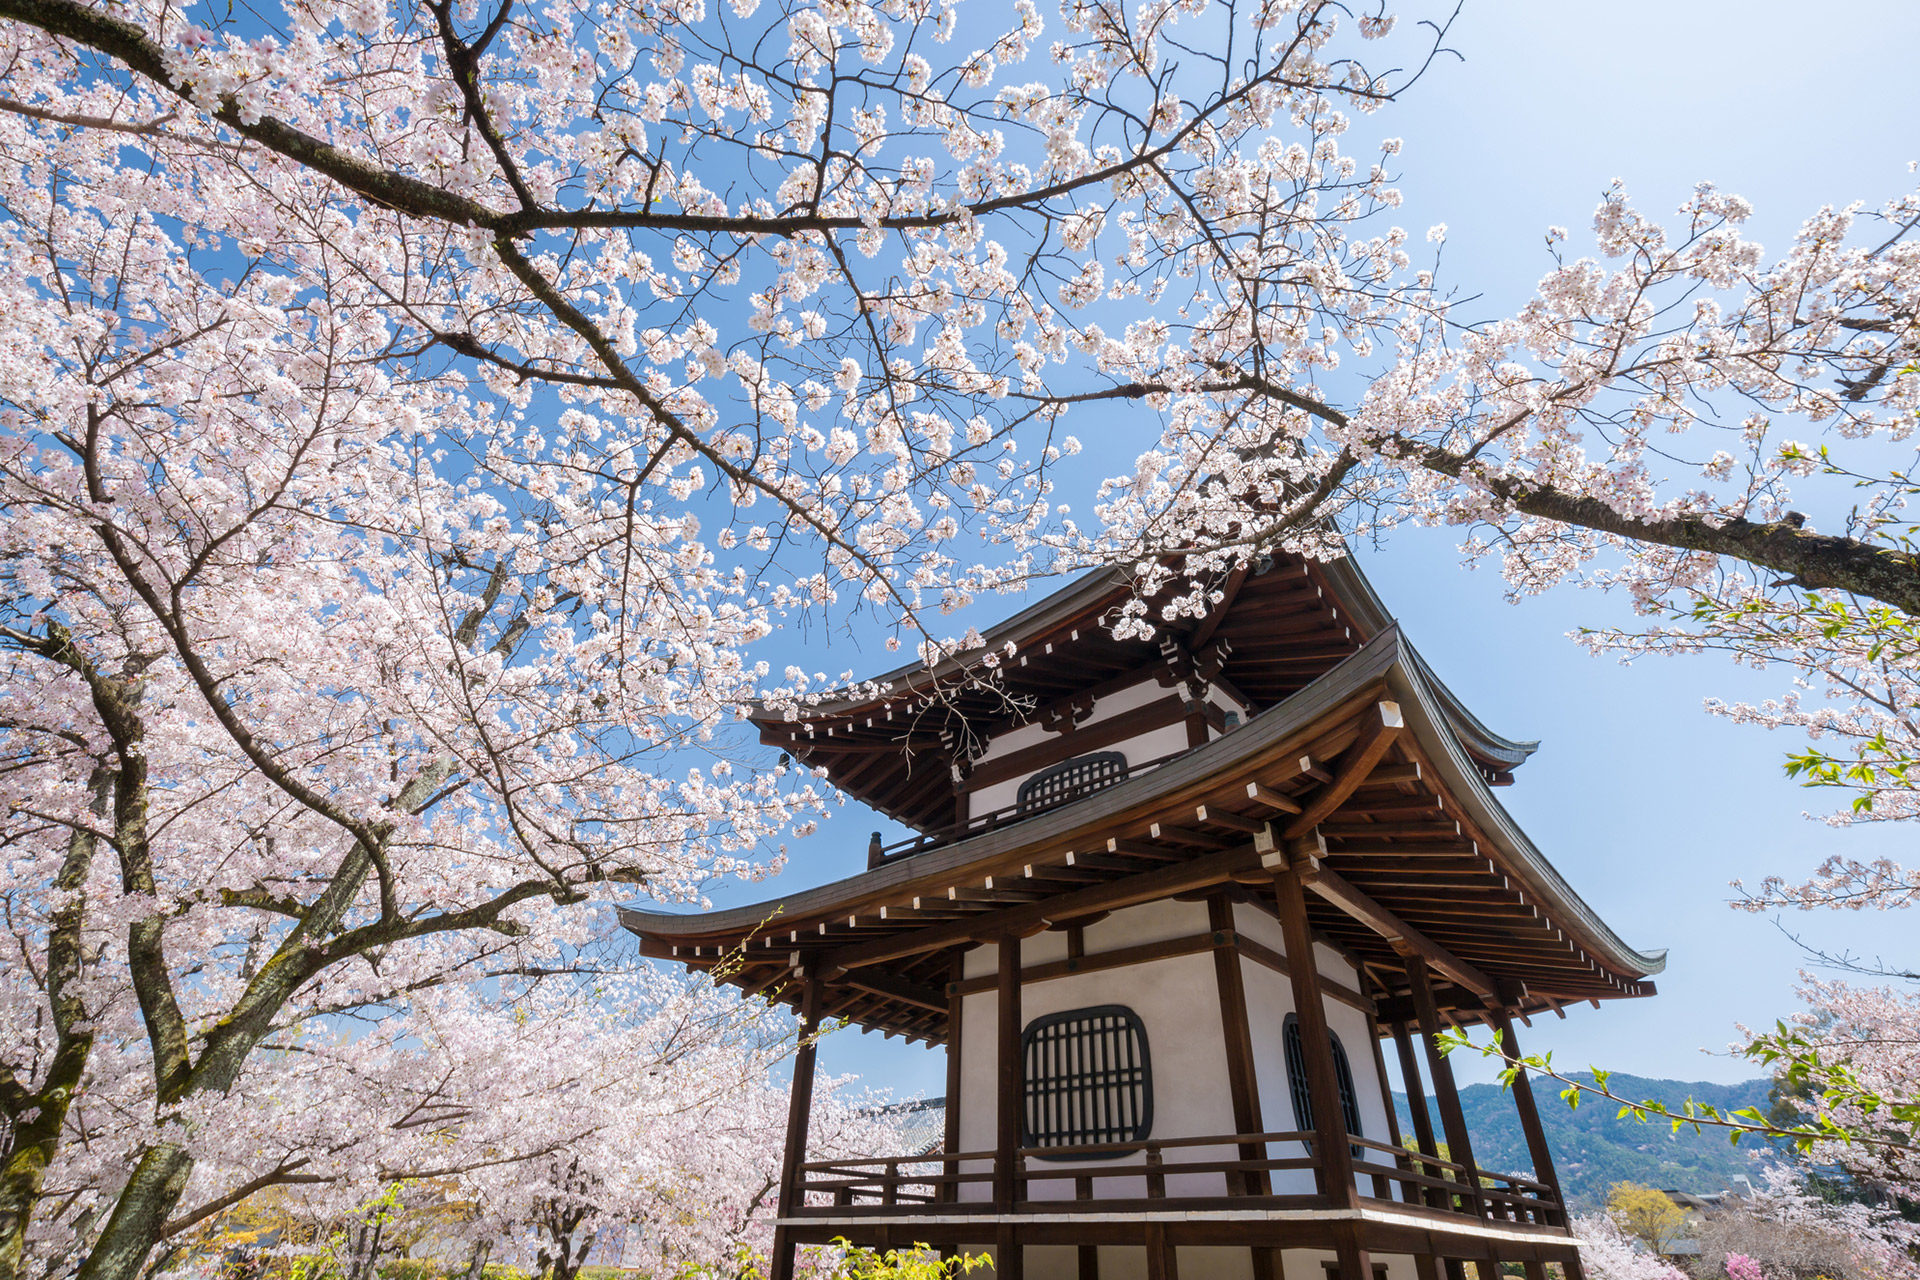 現在京都的櫻花狀況是